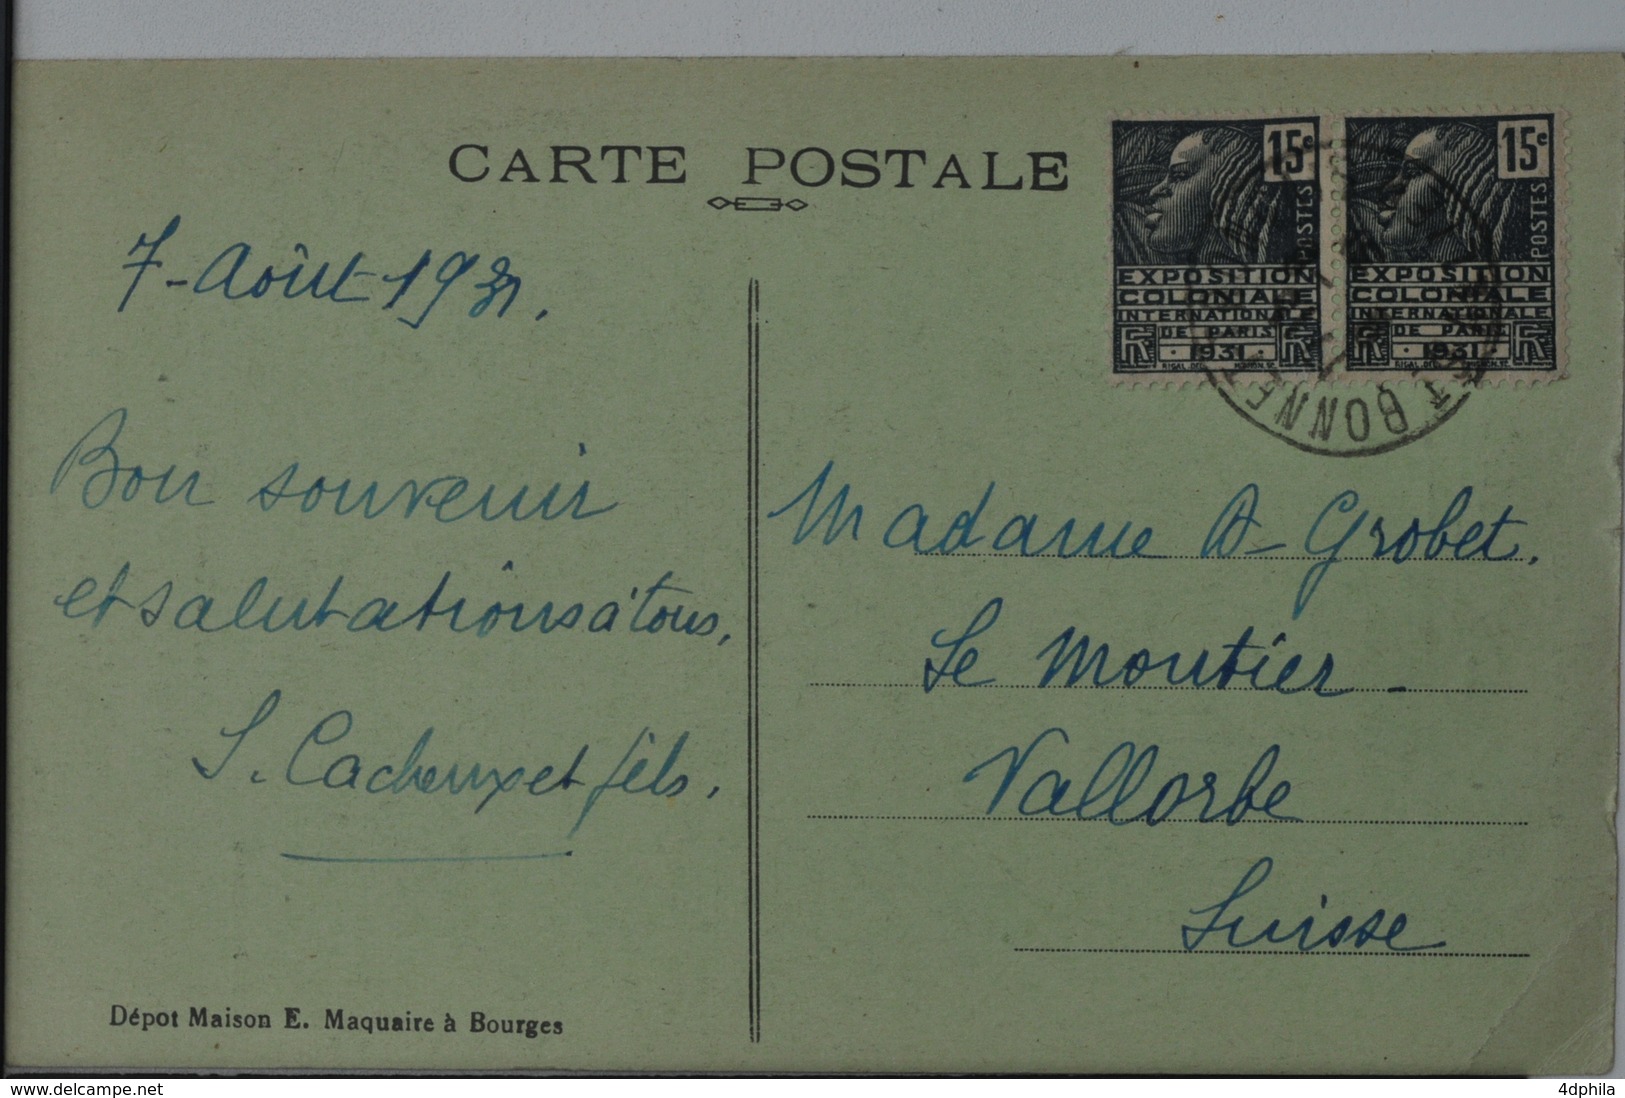 Jean Rameau, chansons illustrées - La Tentation - Paysans Berrichons -  Le Chasseur - 1920-1903’s - 3 cartes postales